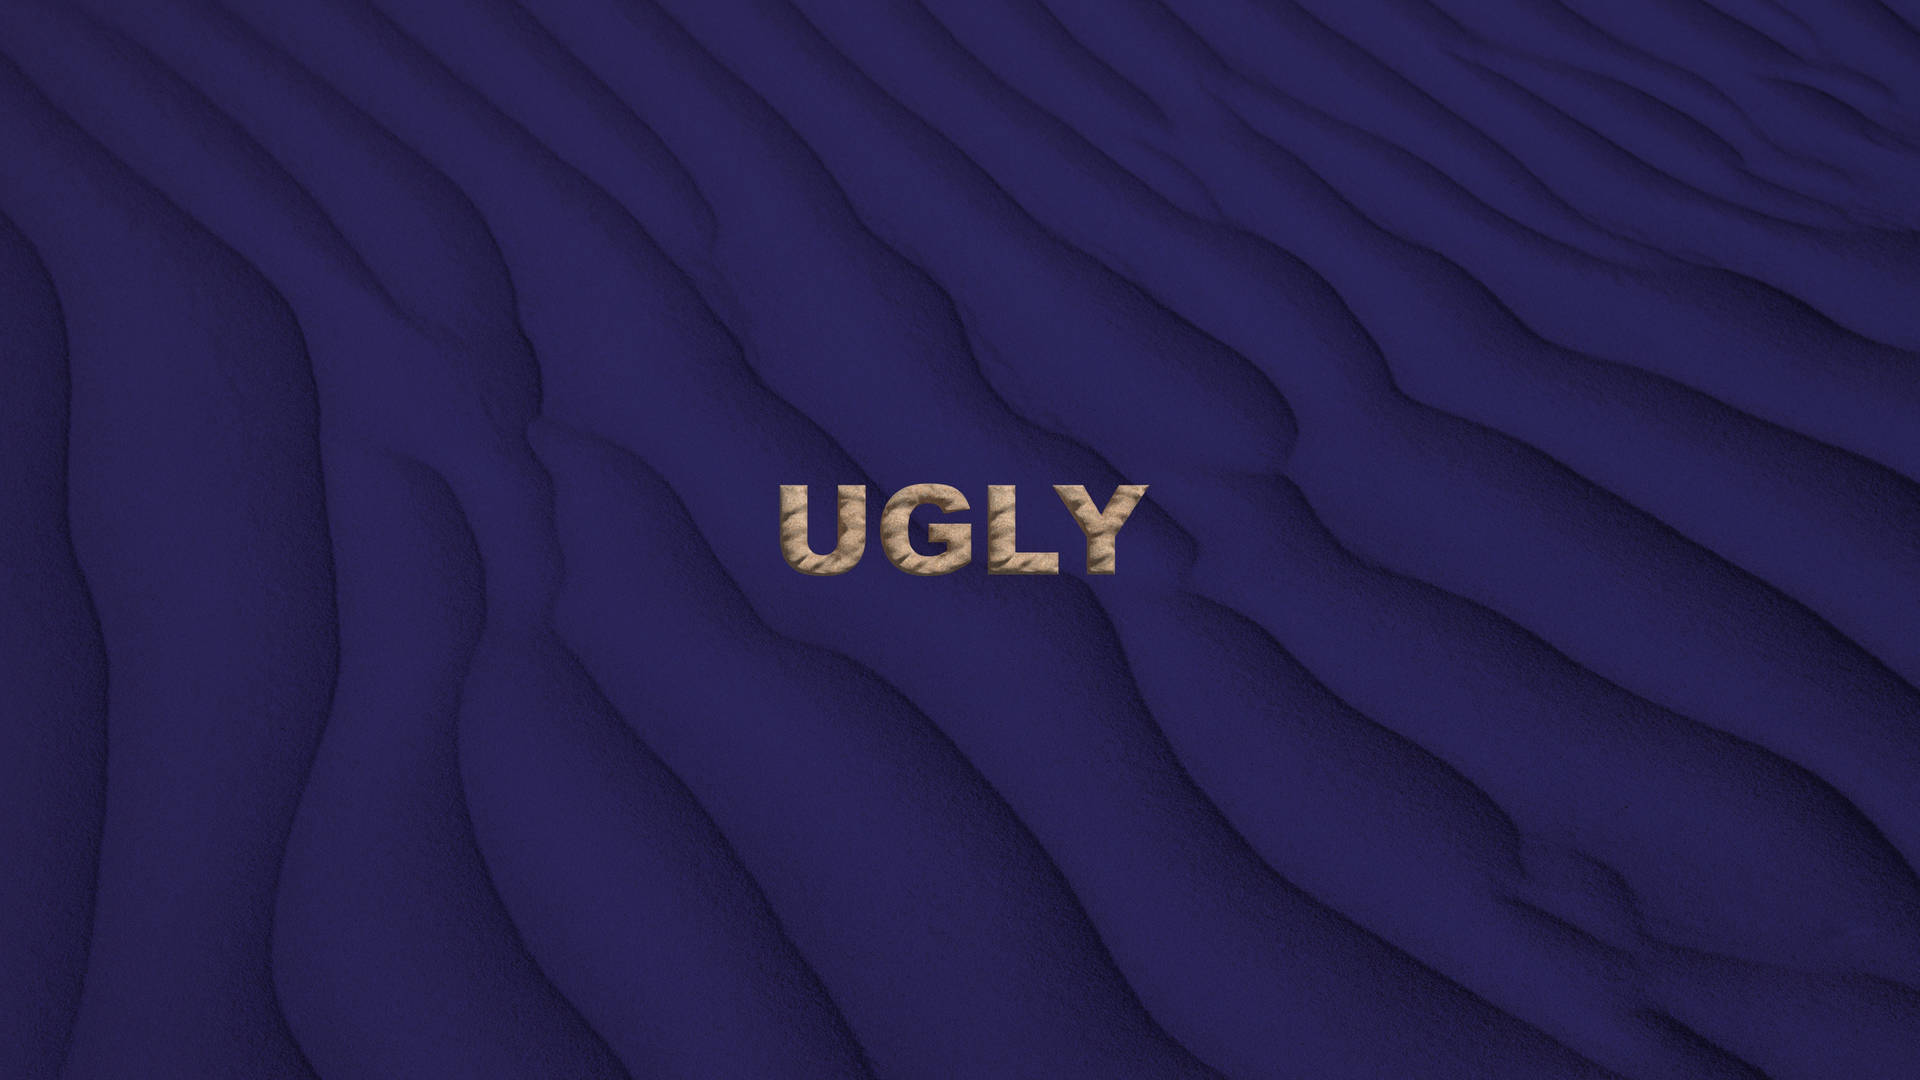 Ugly Violet Sand